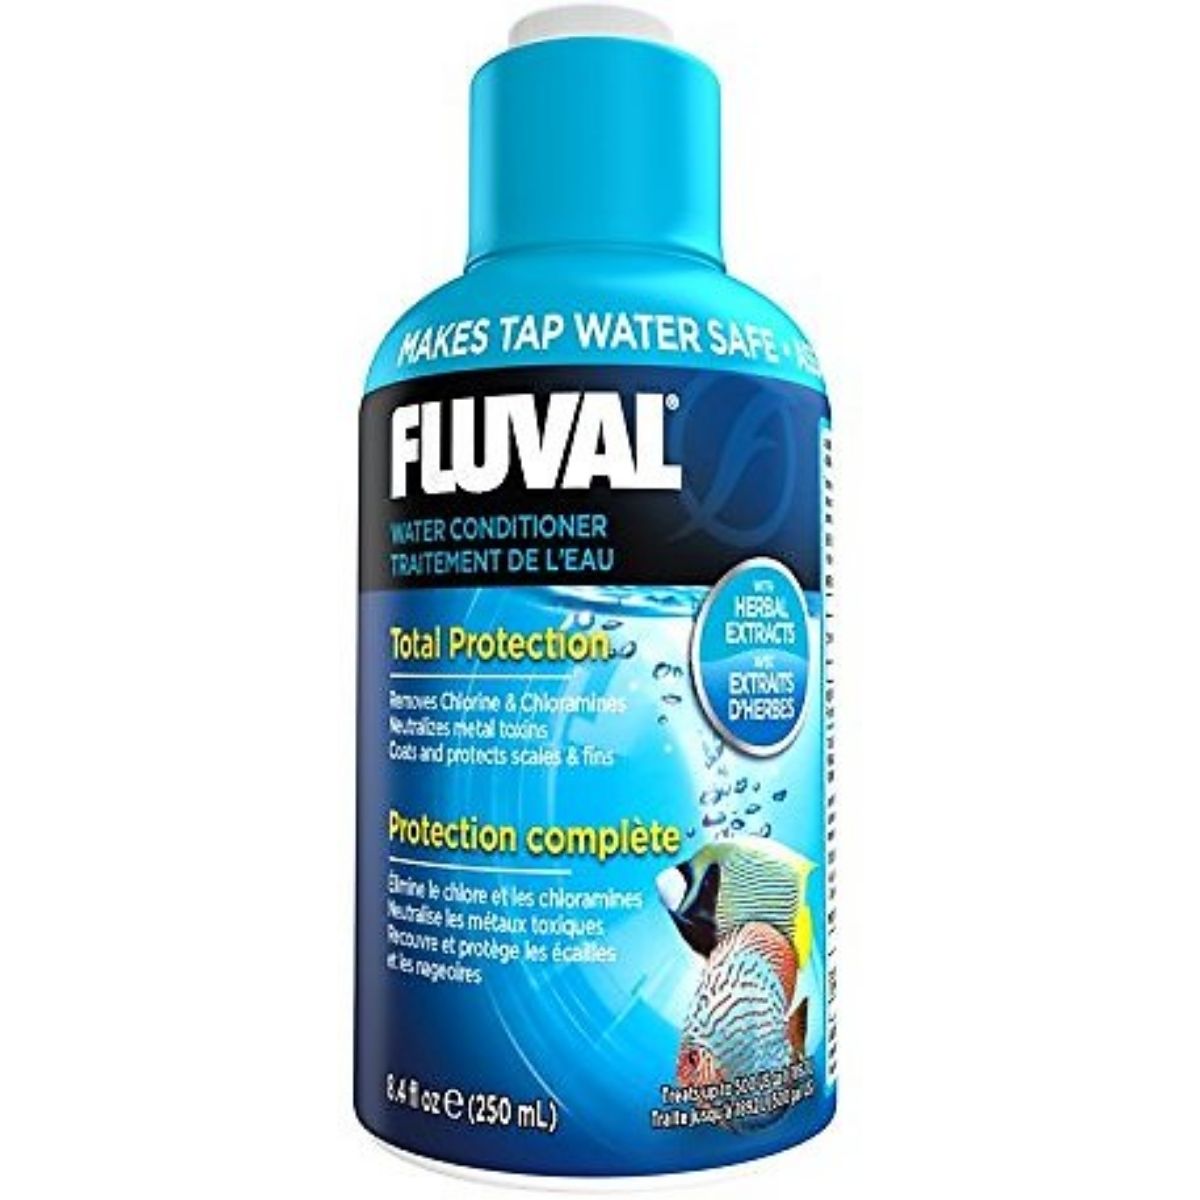 fluval water conditioner for aquariums